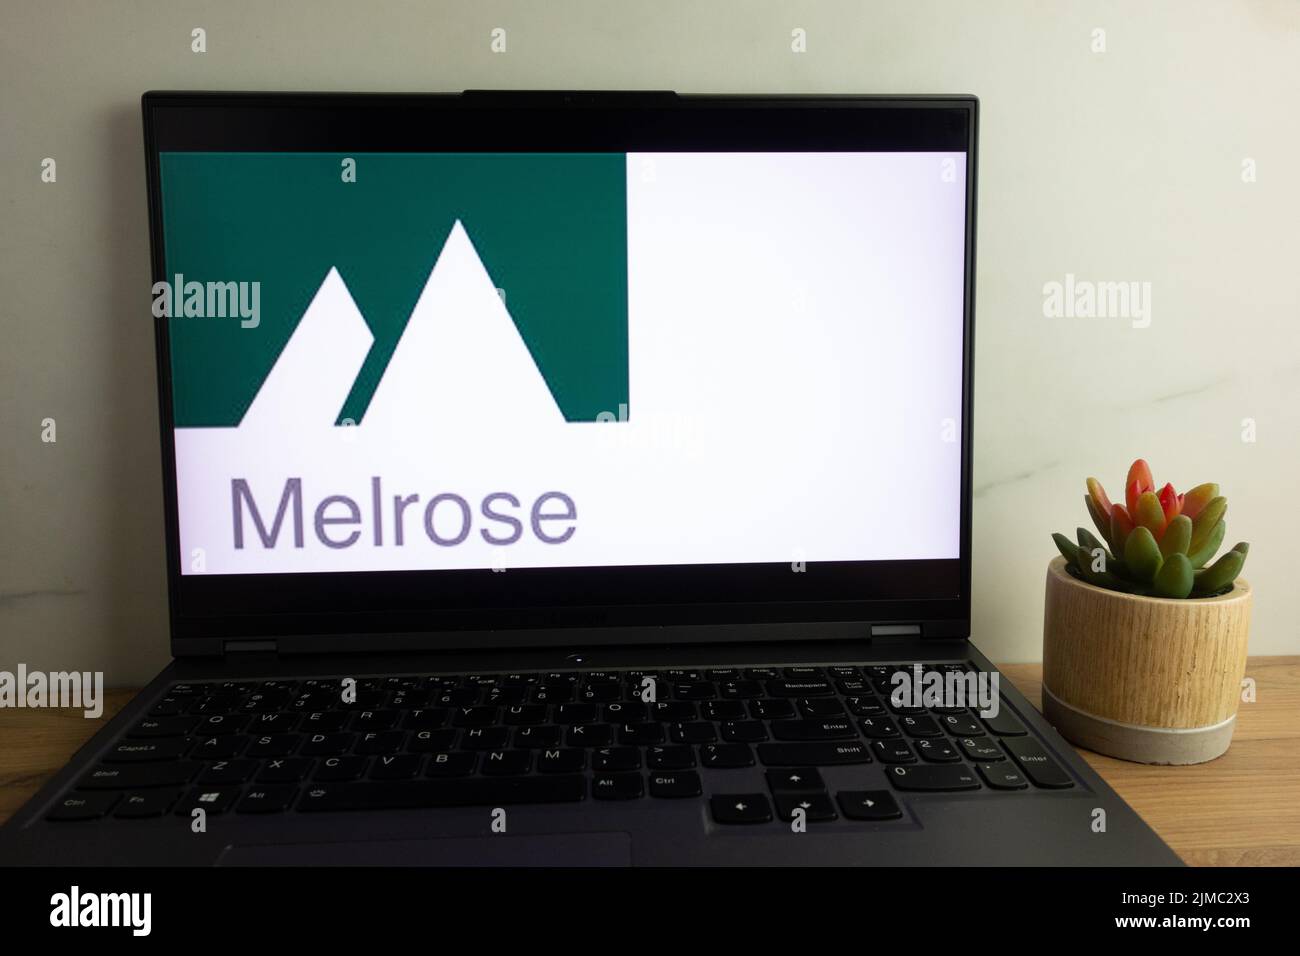 KONSKIE, POLEN - 04. August 2022: Logo des britischen Produktionsunternehmens Melrose Industries plc, das auf dem Laptop-Computerbildschirm angezeigt wird Stockfoto